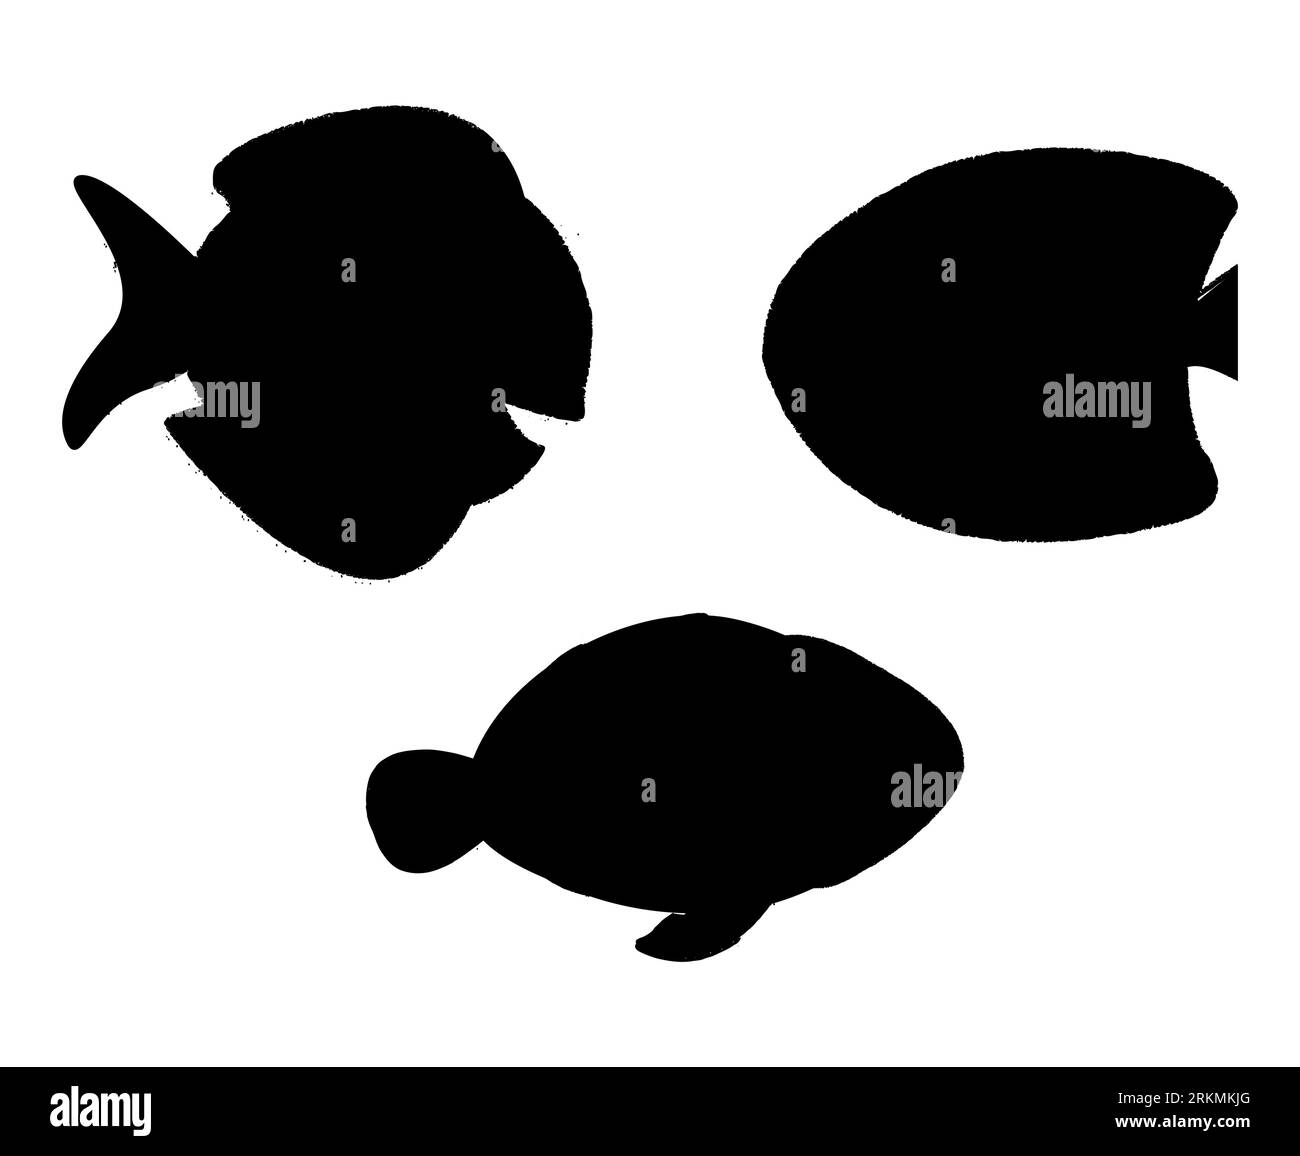 Ensemble de silhouettes de poissons, créatures marines, collection de silhouettes d'animaux aquatiques, vecteur de fruits de mer isolé sur fond blanc Illustration de Vecteur